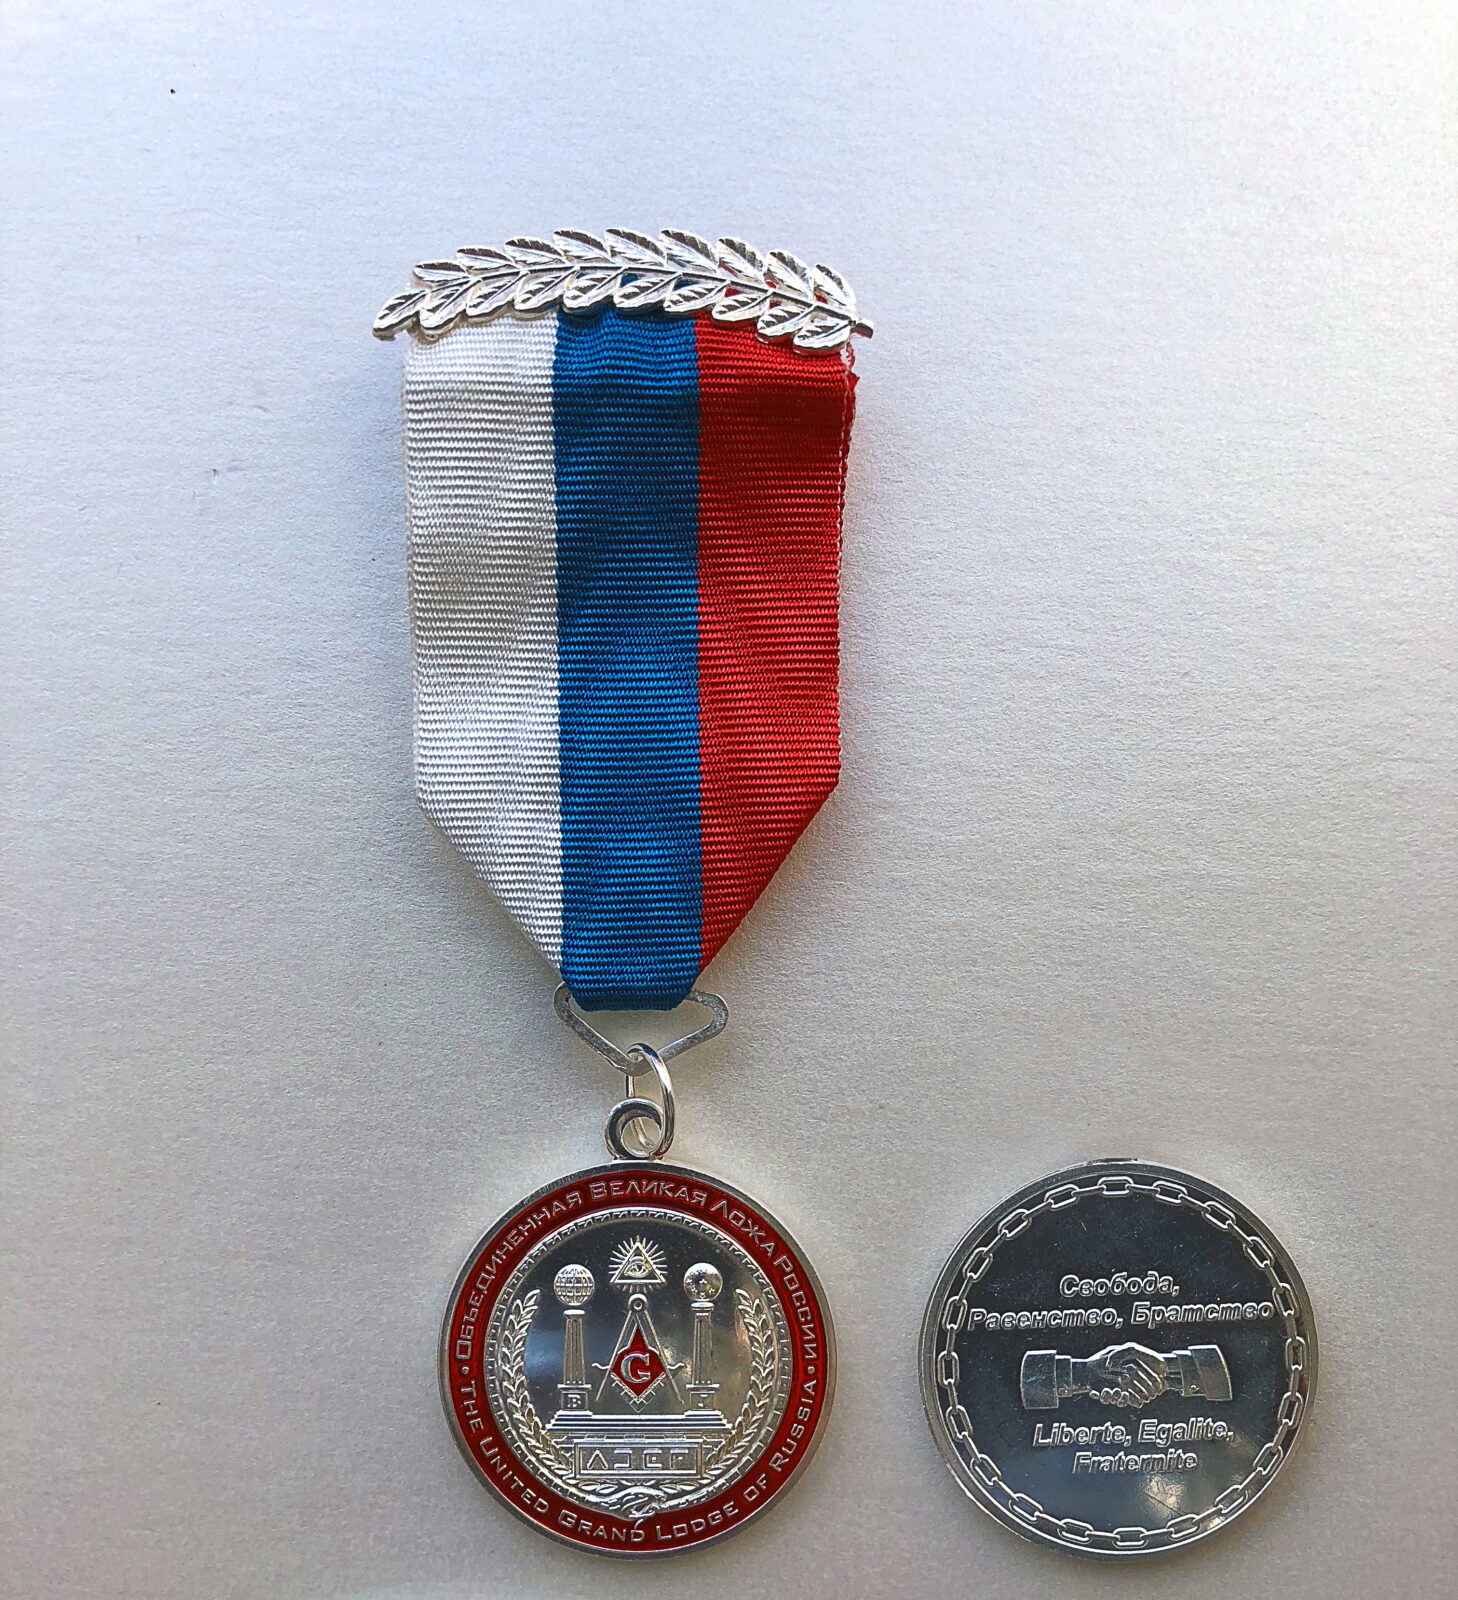 Медаль ОВЛР - "Объединенная Великая Ложа России"